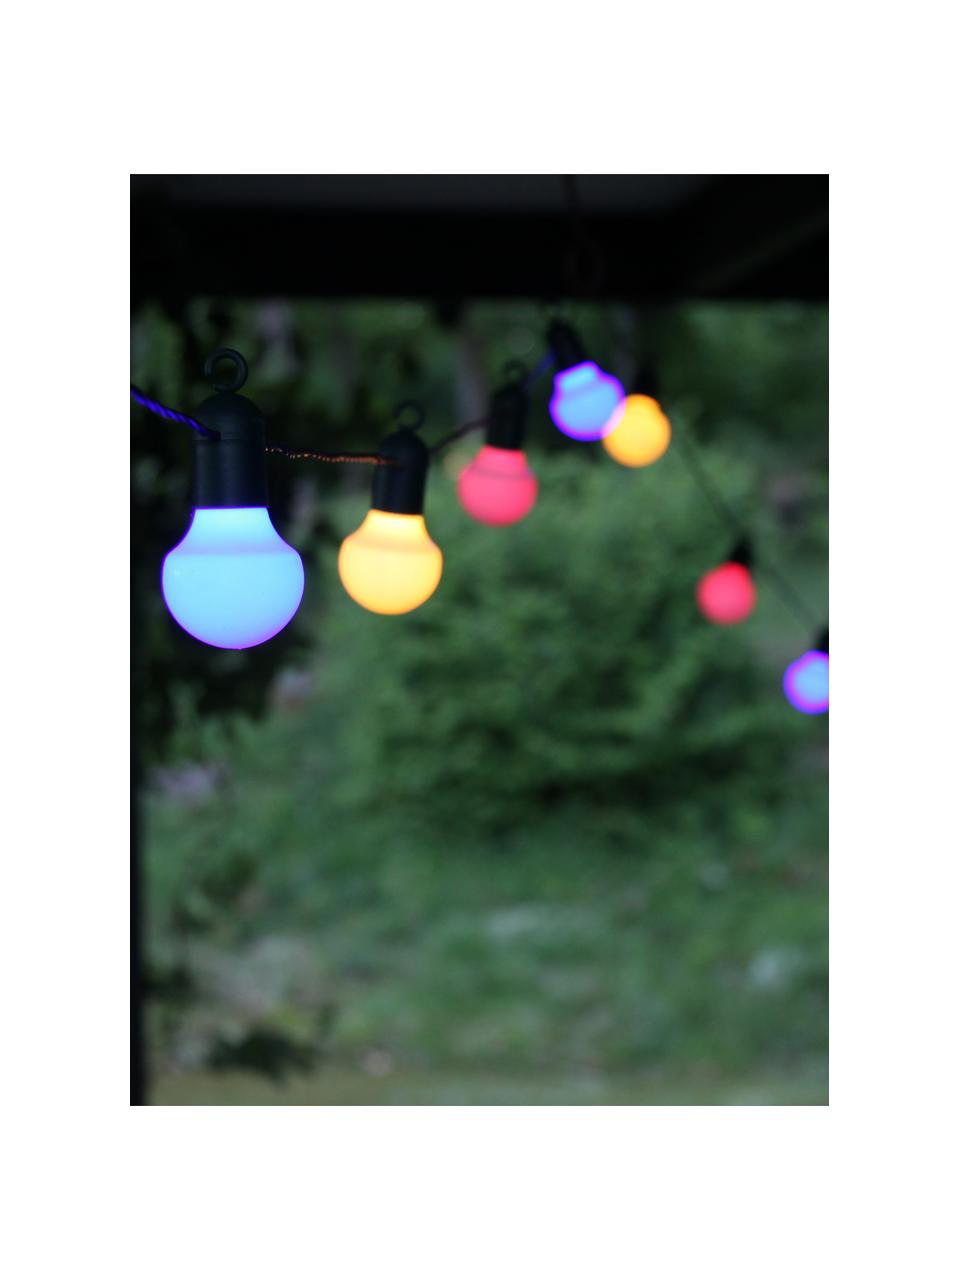 Zewnętrzna girlanda świetlna LED Hooky, 1070 cm i 20 lampionów, Blady różowy, biały, niebieski, D 1070 cm